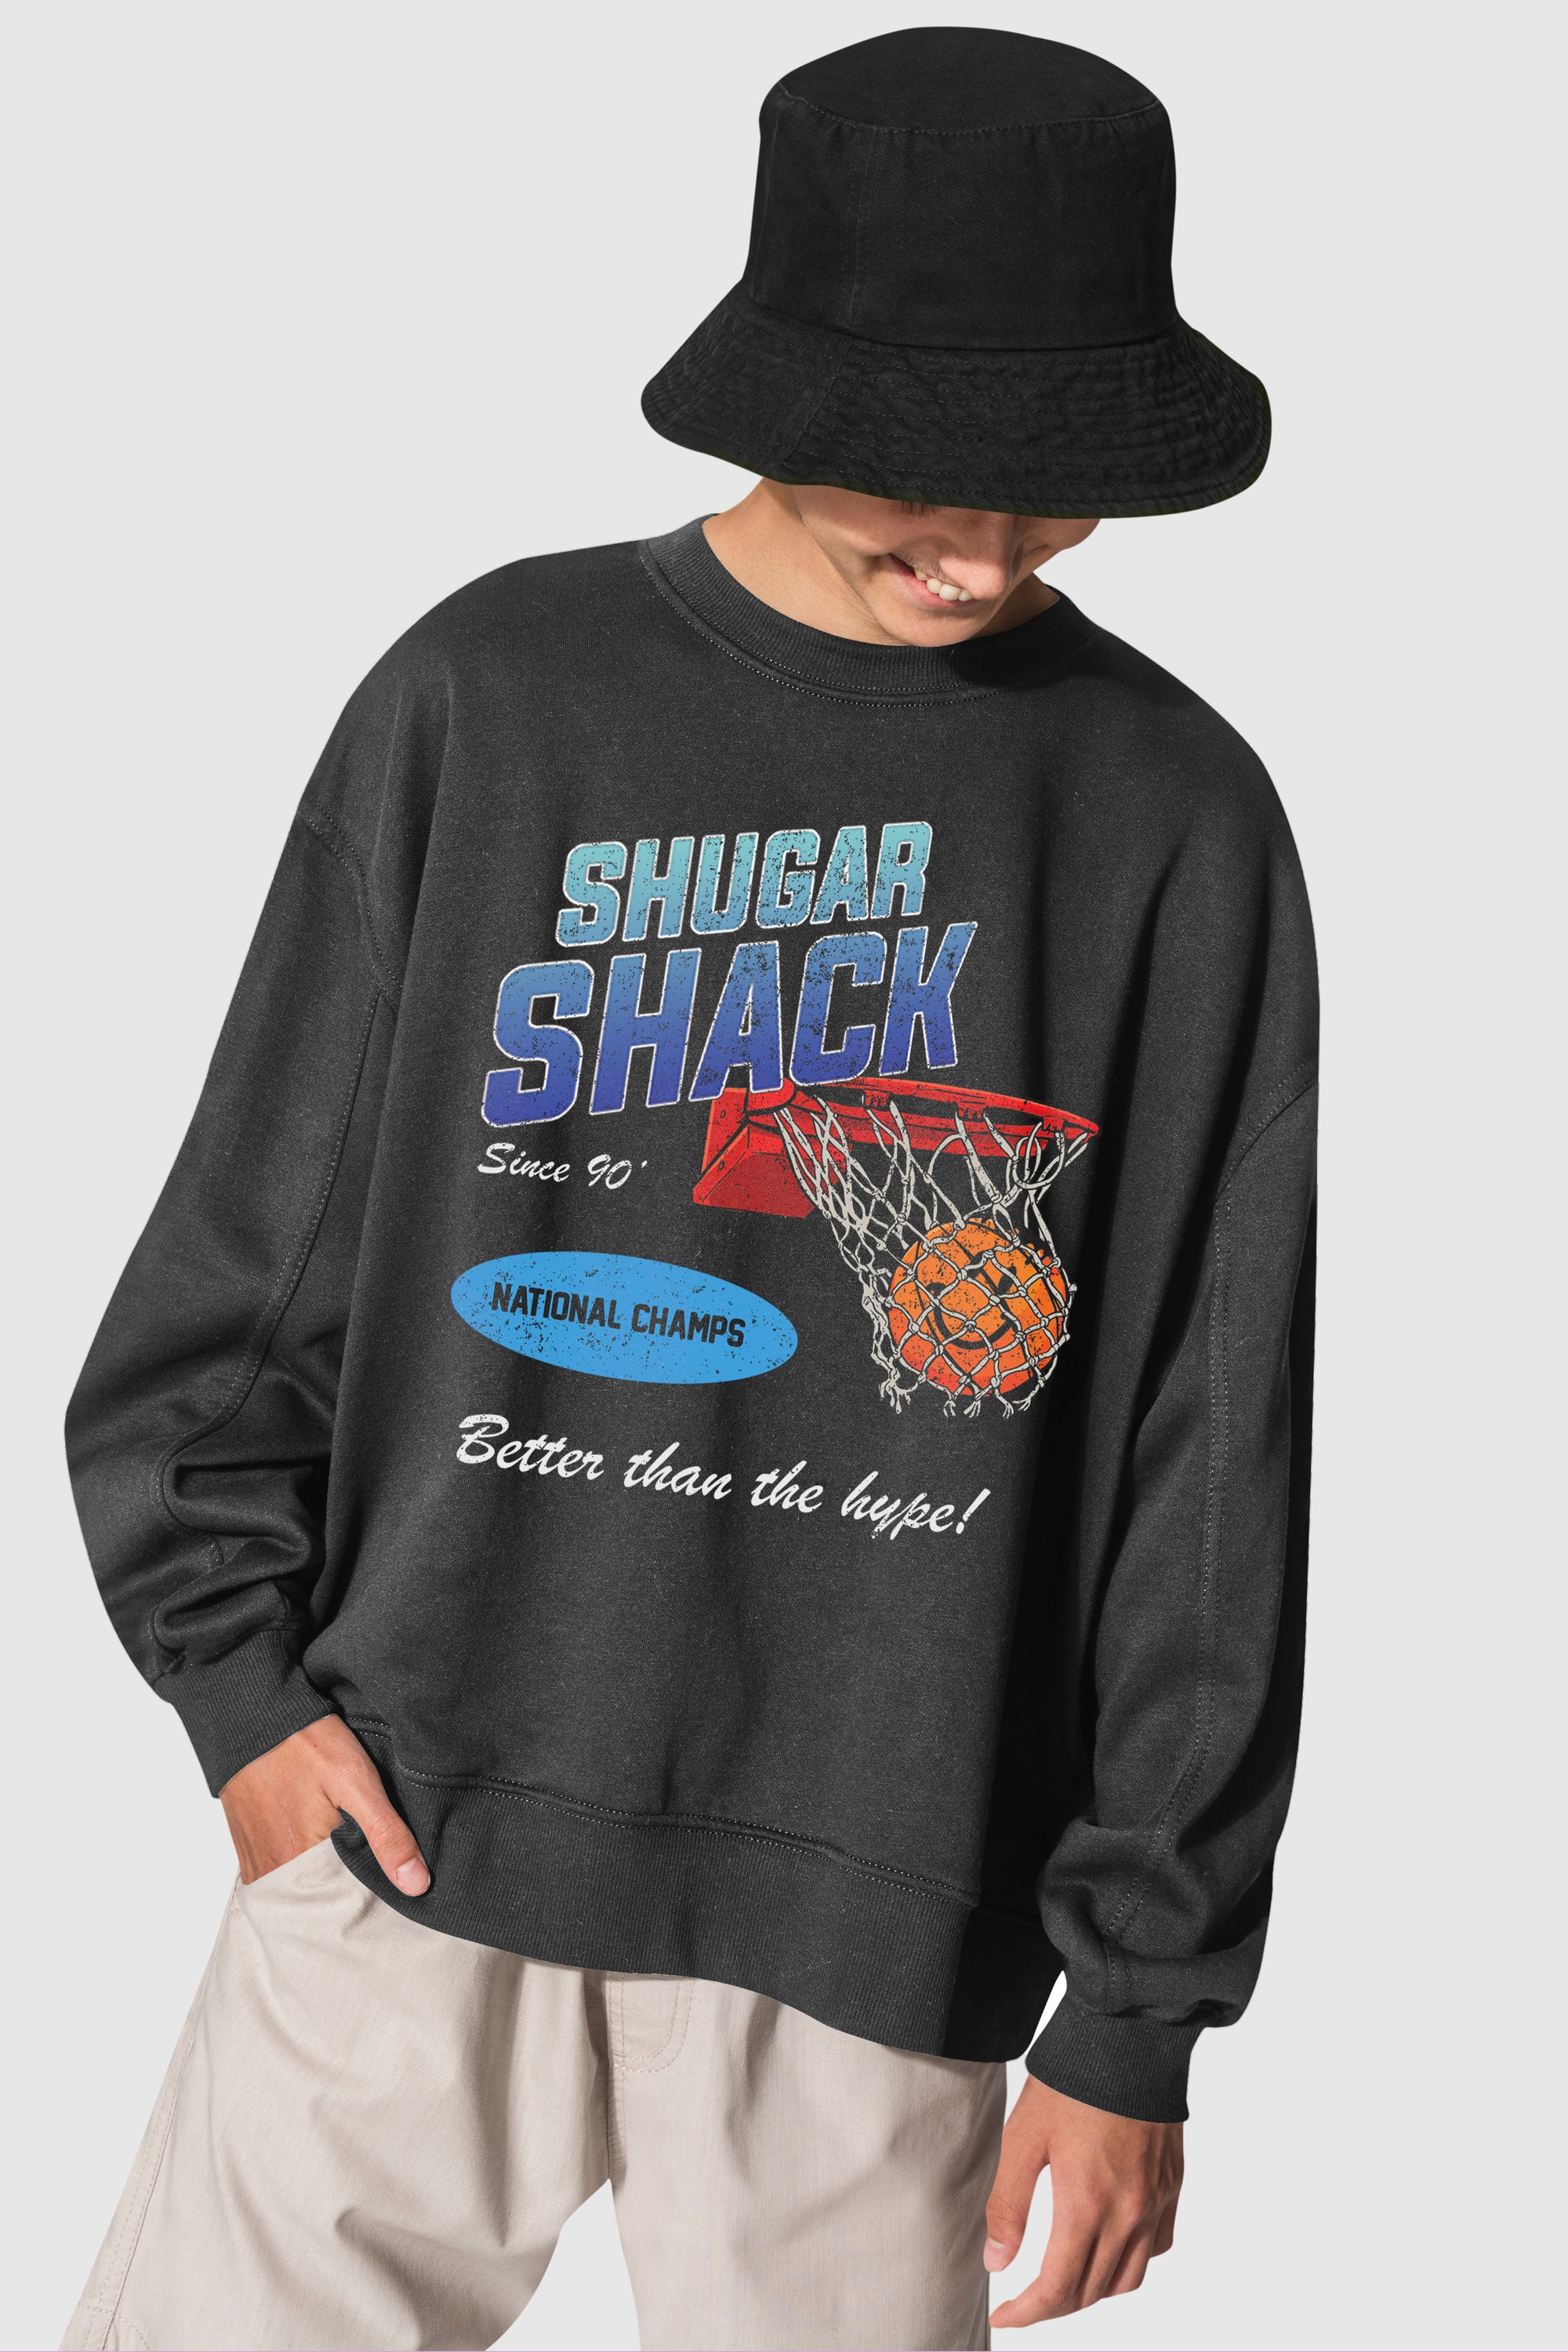 Shugar Shack Vintage Hoops Crewneck